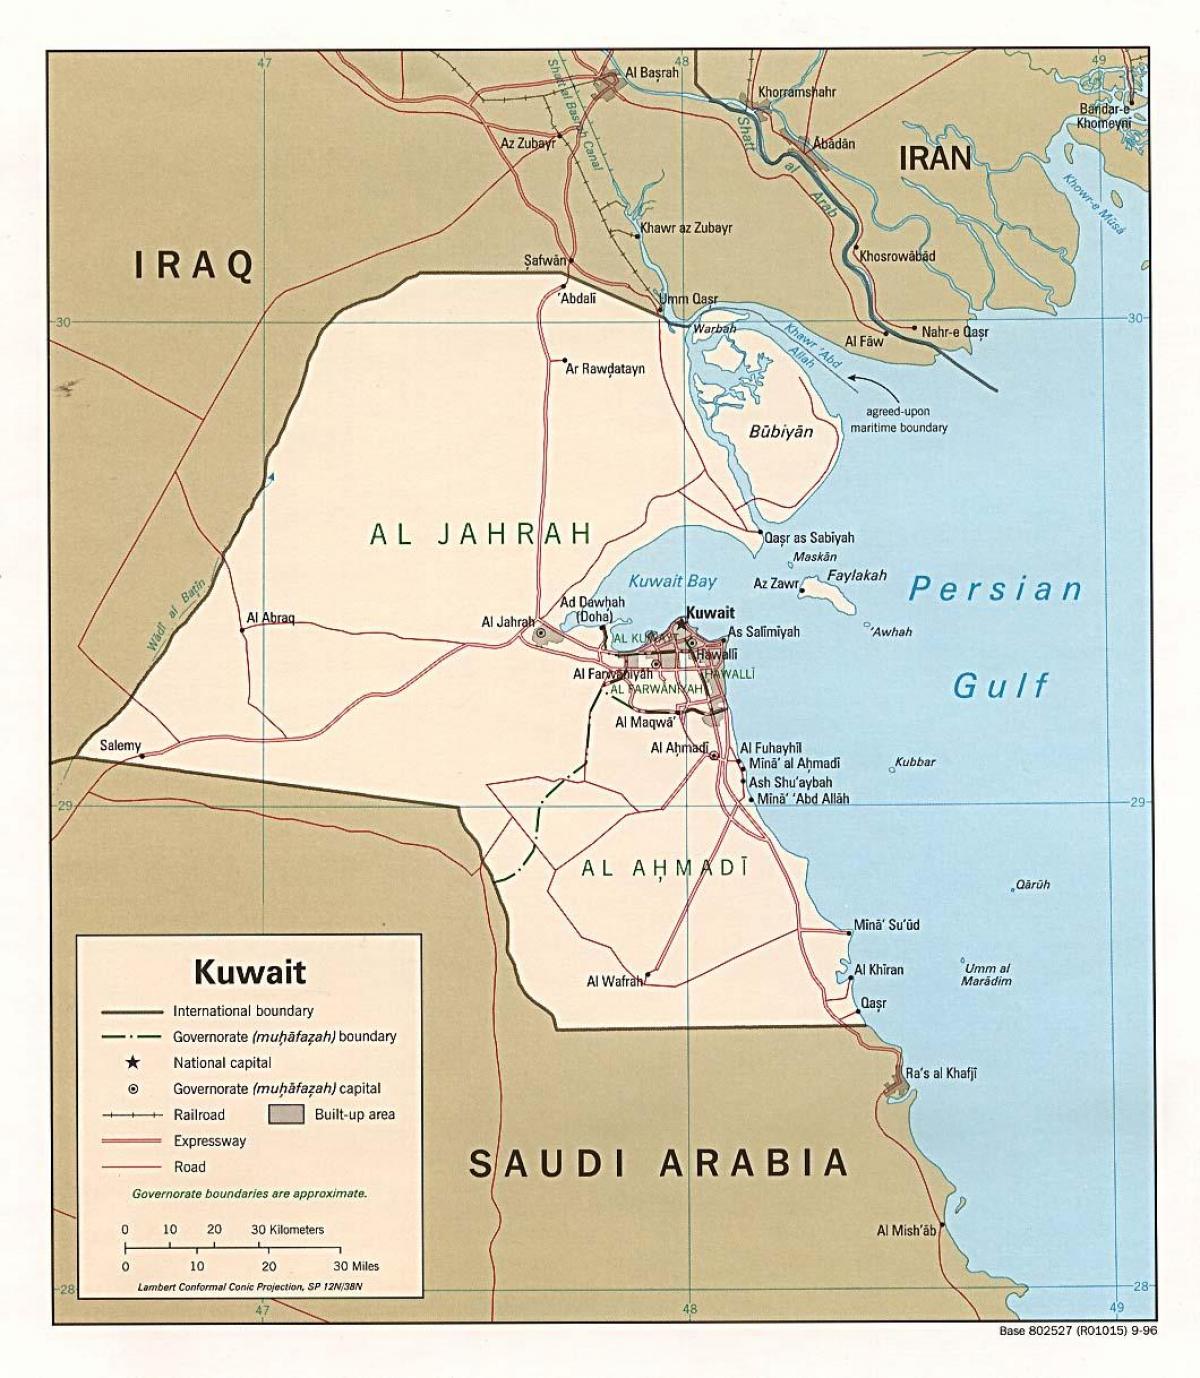 خريطة الصفاة الكويت